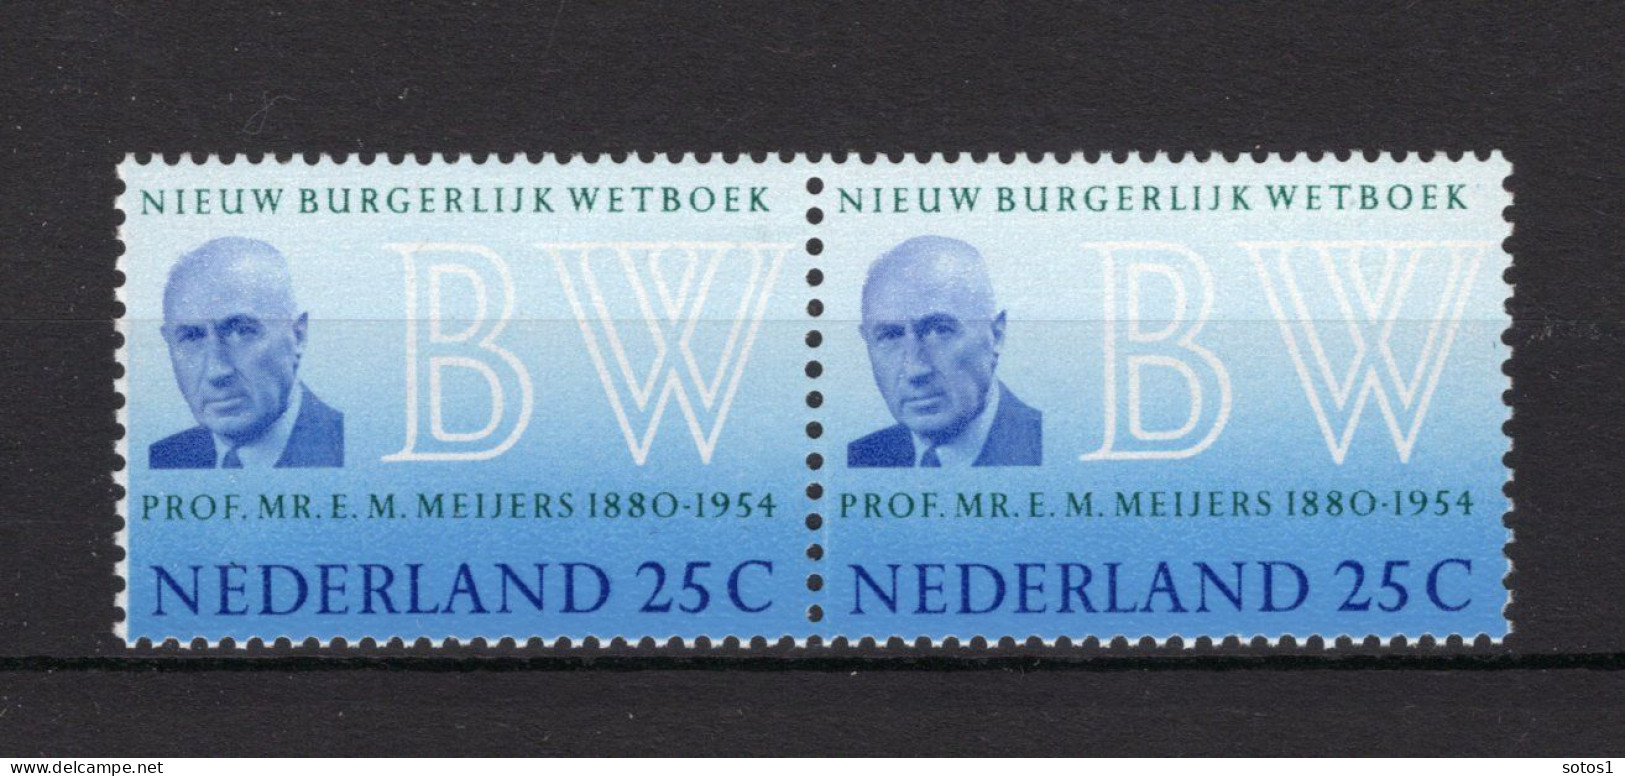 NEDERLAND 963 MNH 1970 - Nieuw Burgerlijk Wetboek (2 Stuks) - Unused Stamps